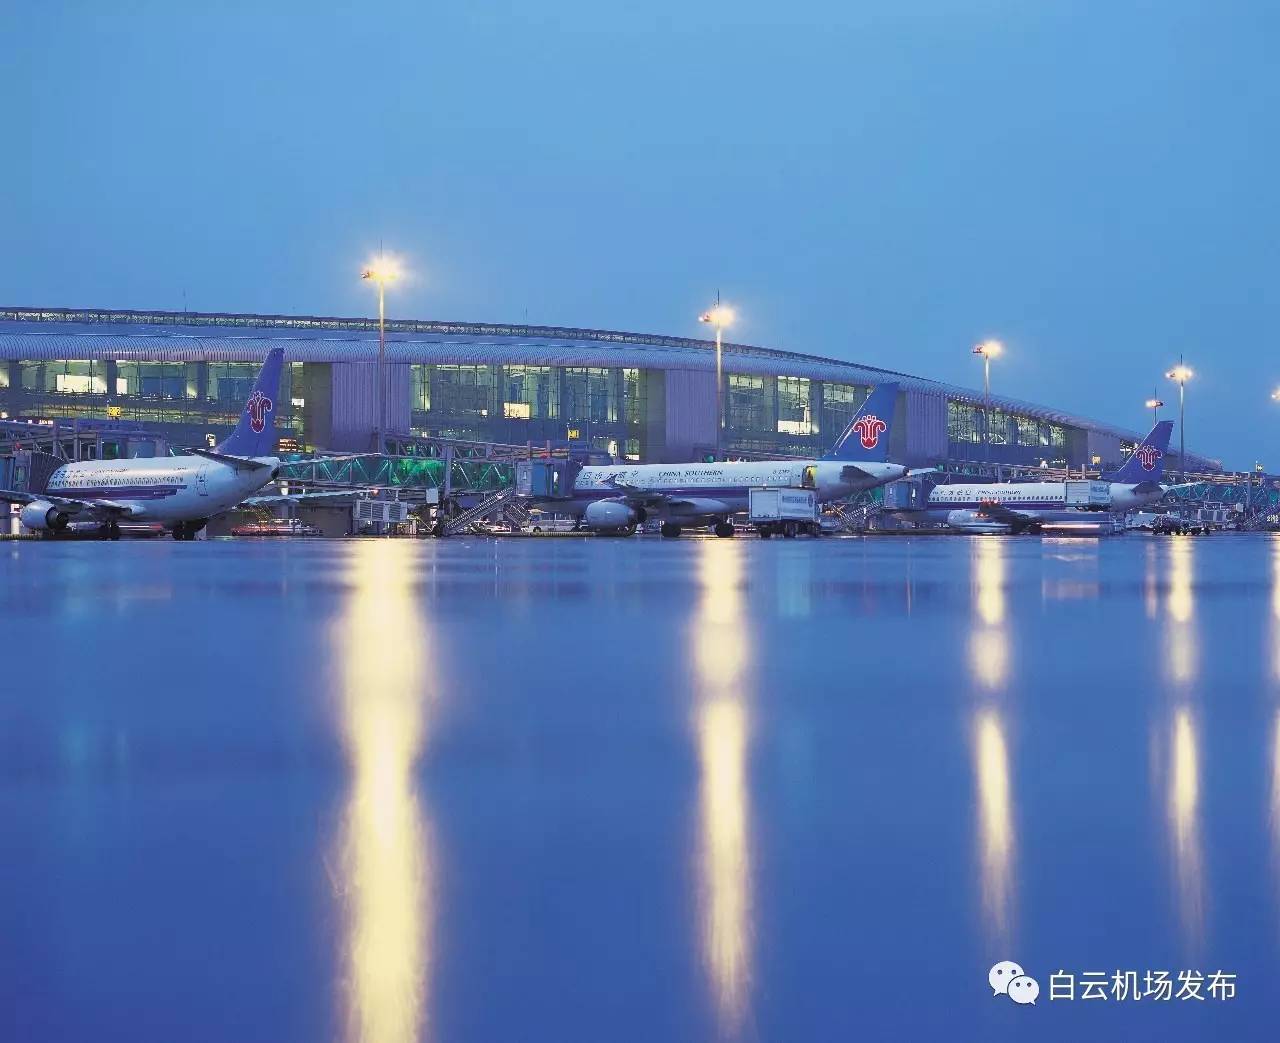 EWS|白云机场T2航站楼启用后航空公司运营配